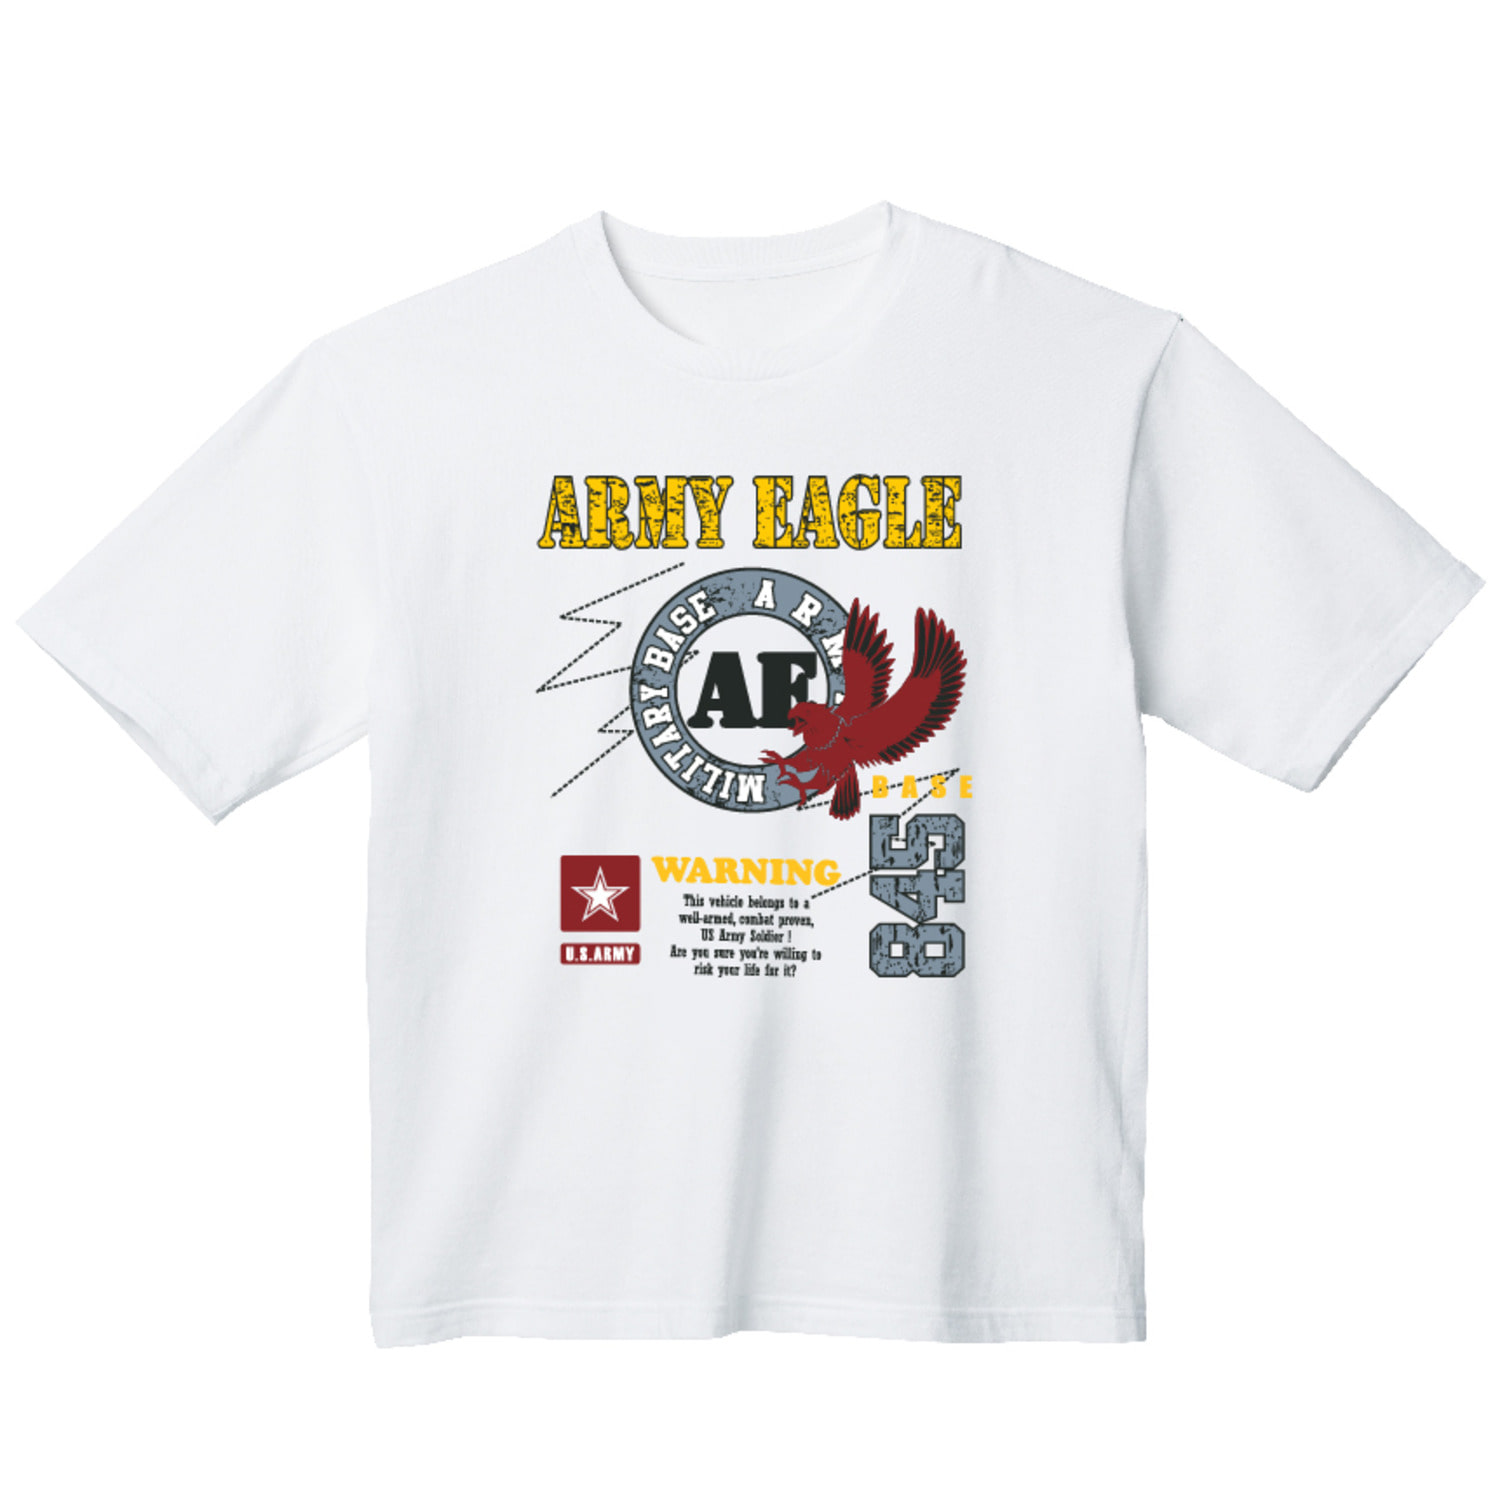 육군 독수리 그래픽 오버핏 티셔츠 army.26